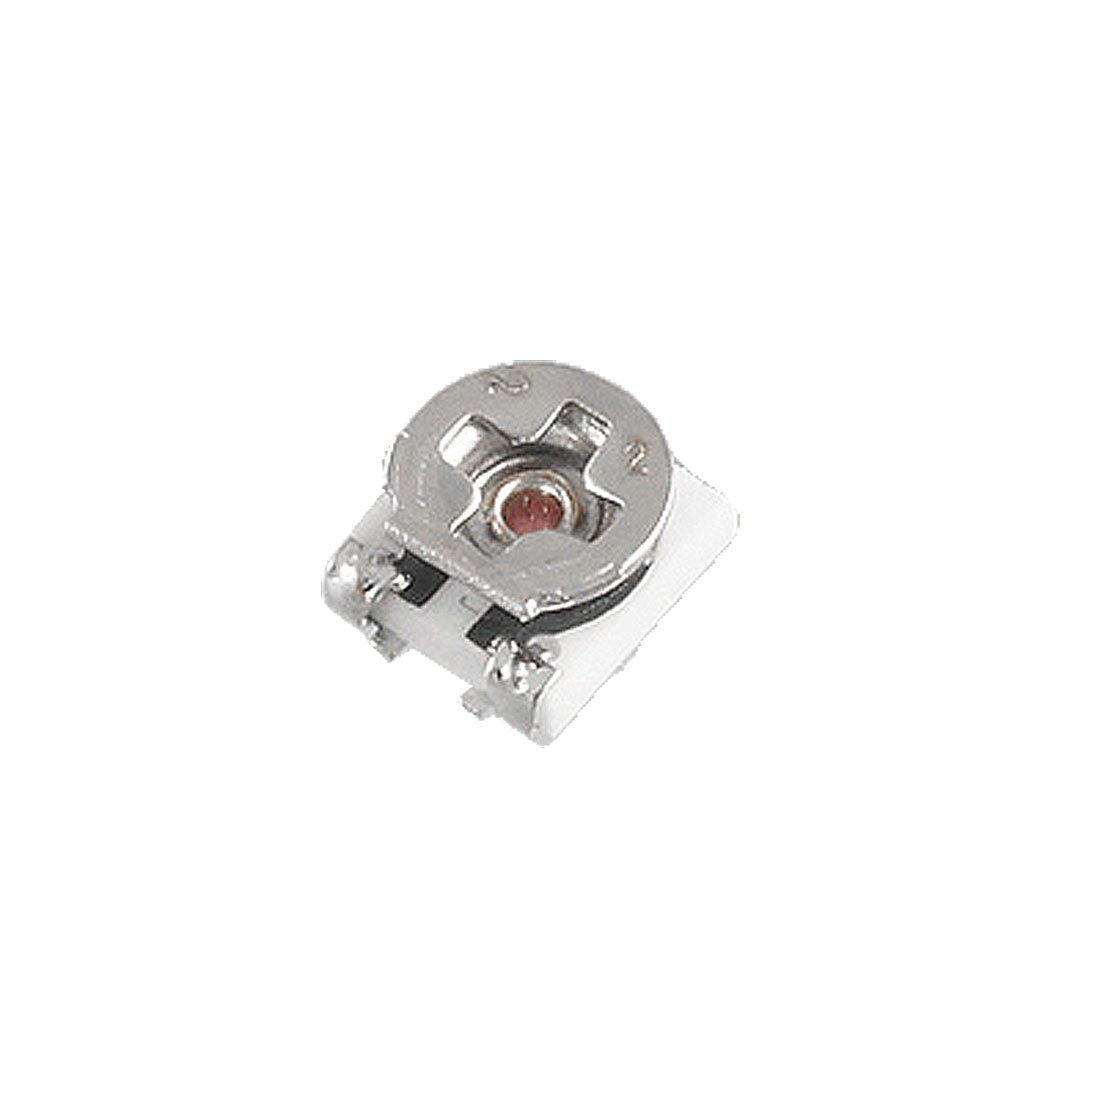 SMD Single Turn Potentiometer Trimmer Adjustable Resistance